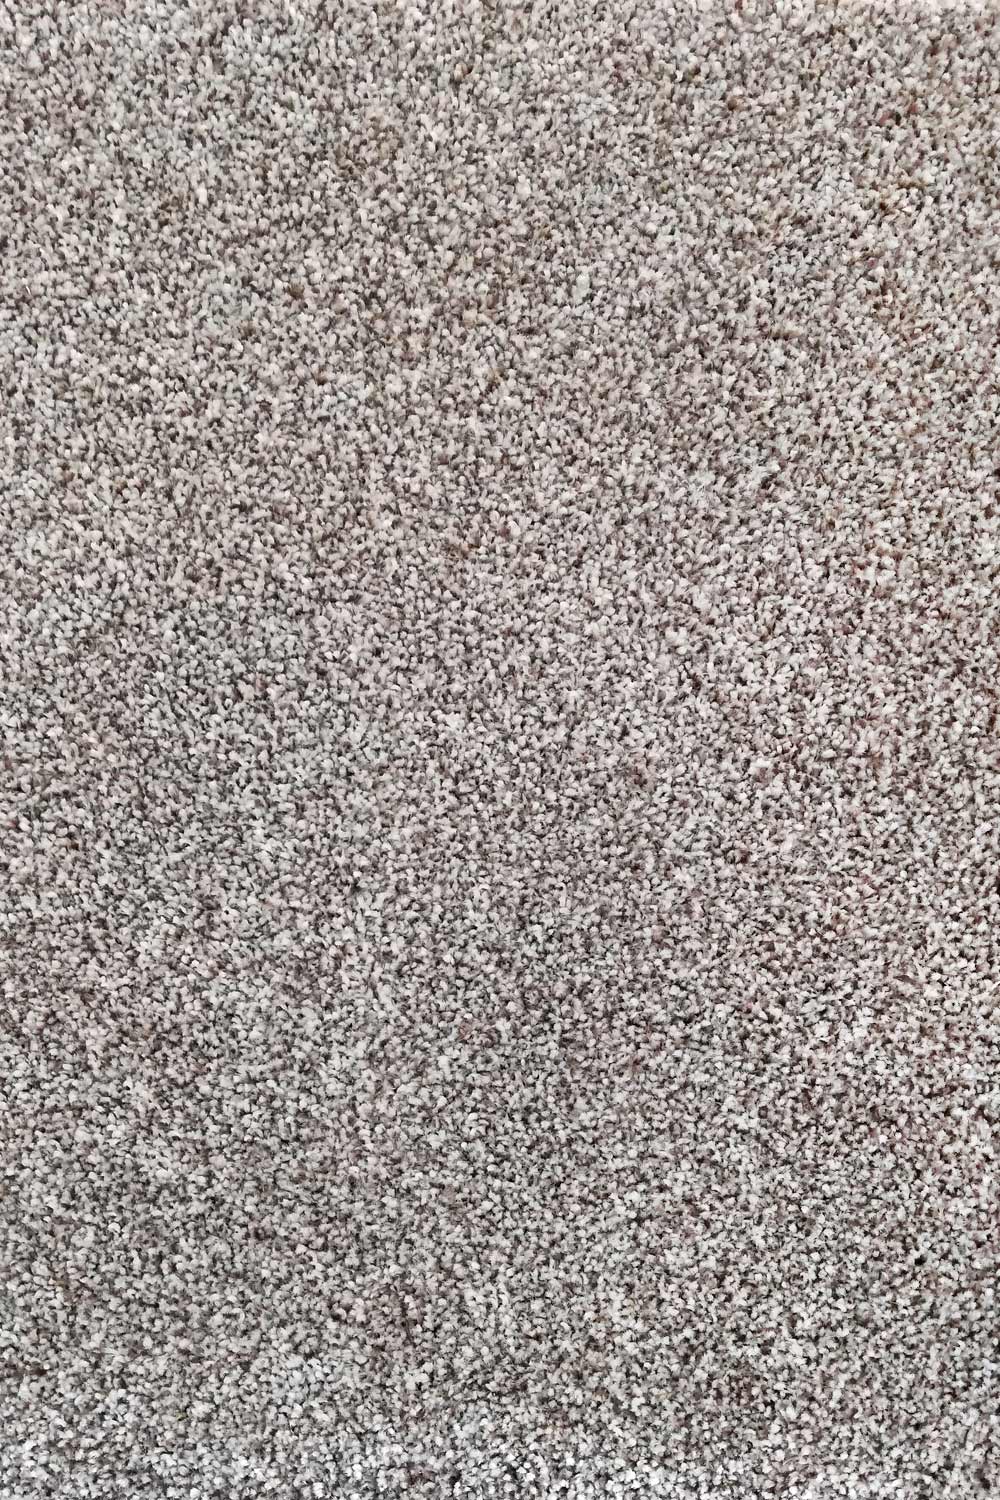 Metrážny koberec Dalesman 62 500 cm